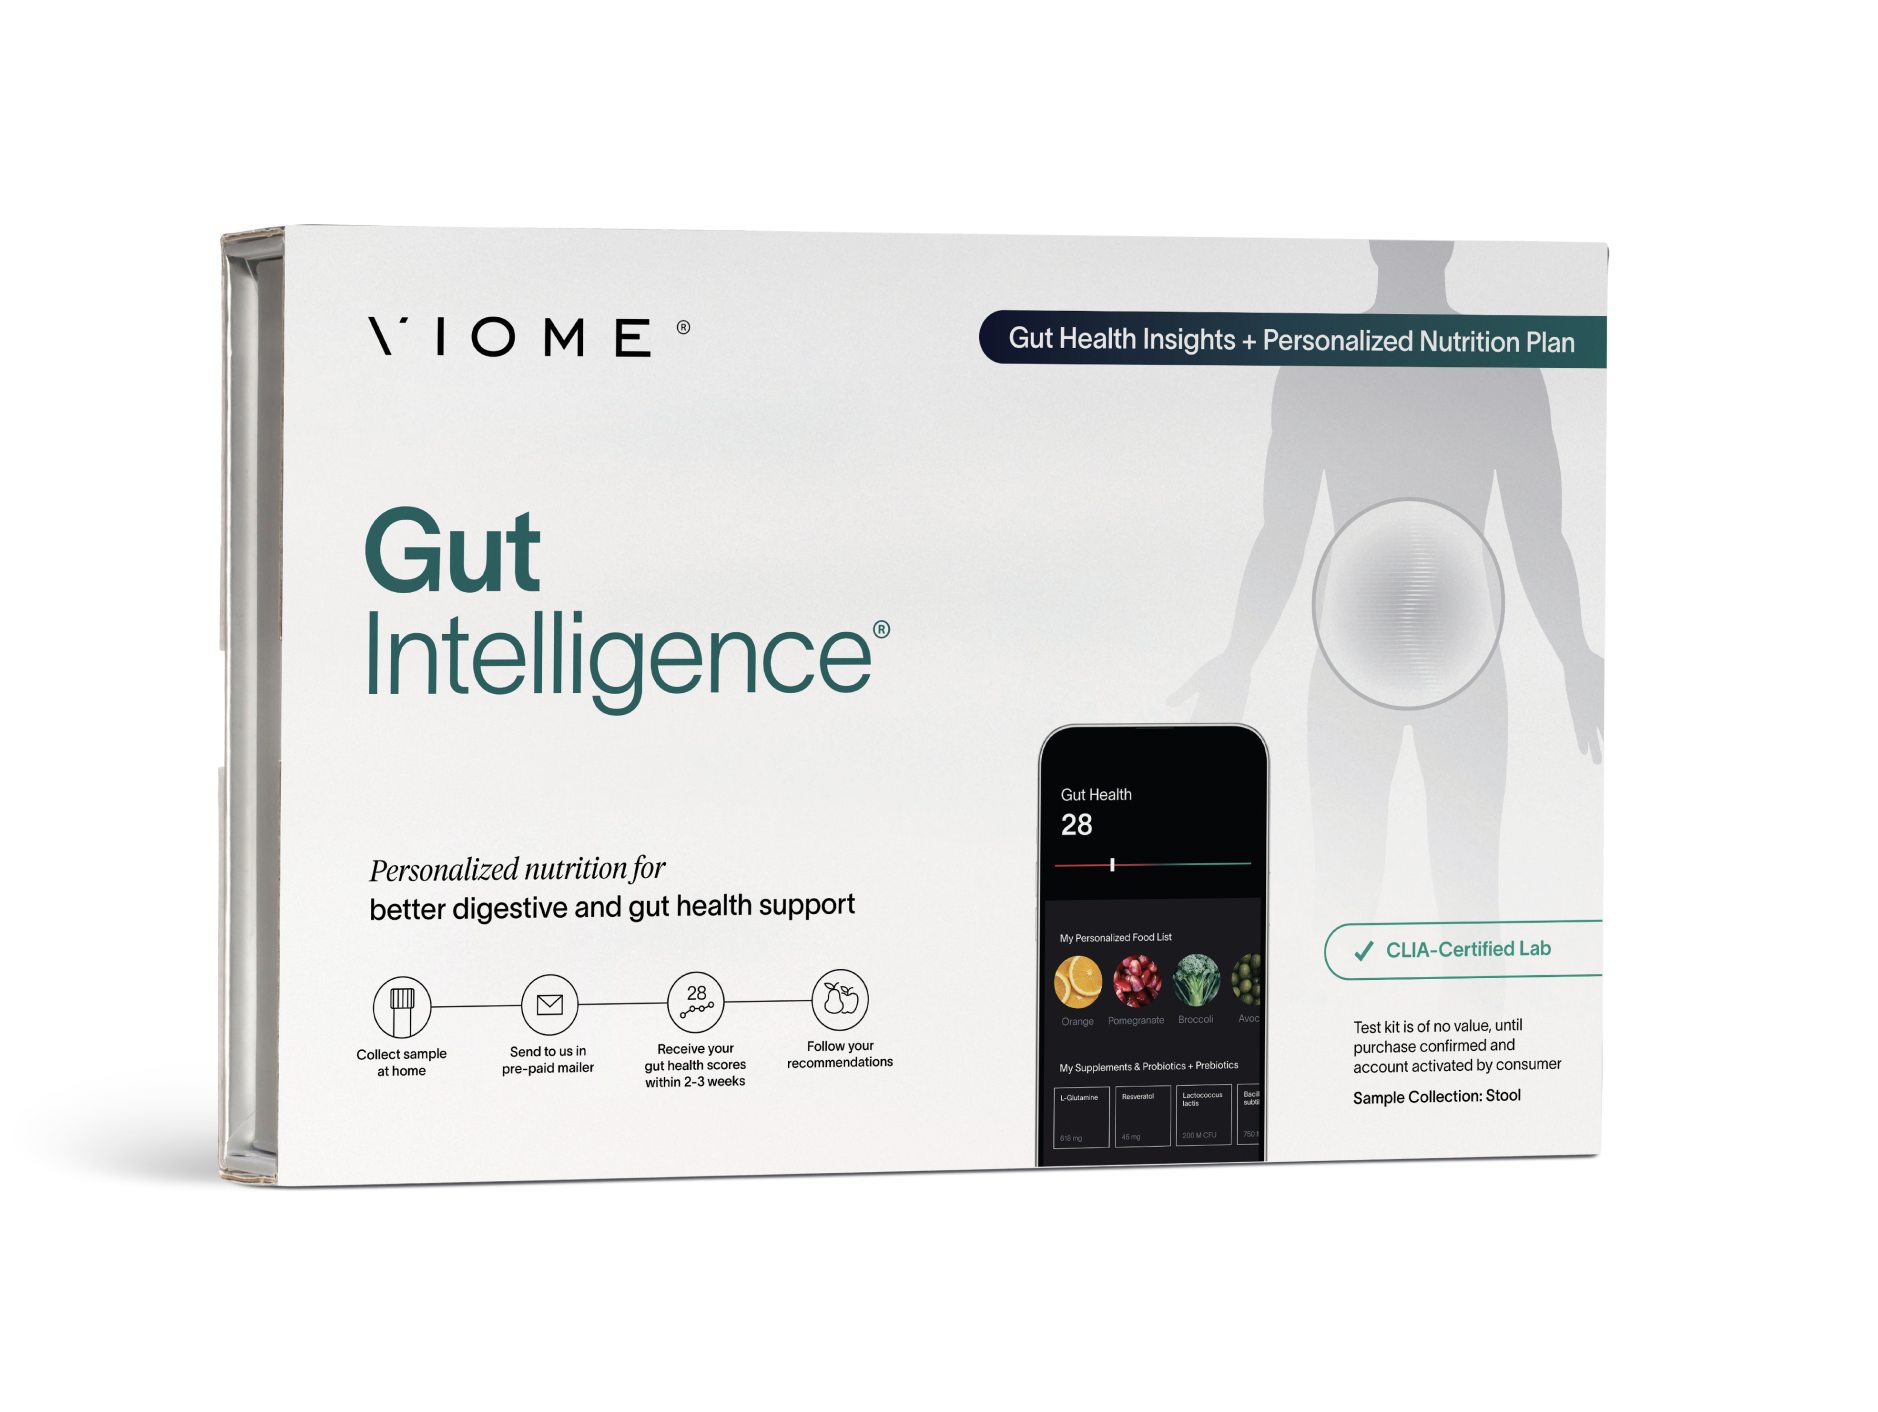 Viomes at-home gut microbiome testing kit